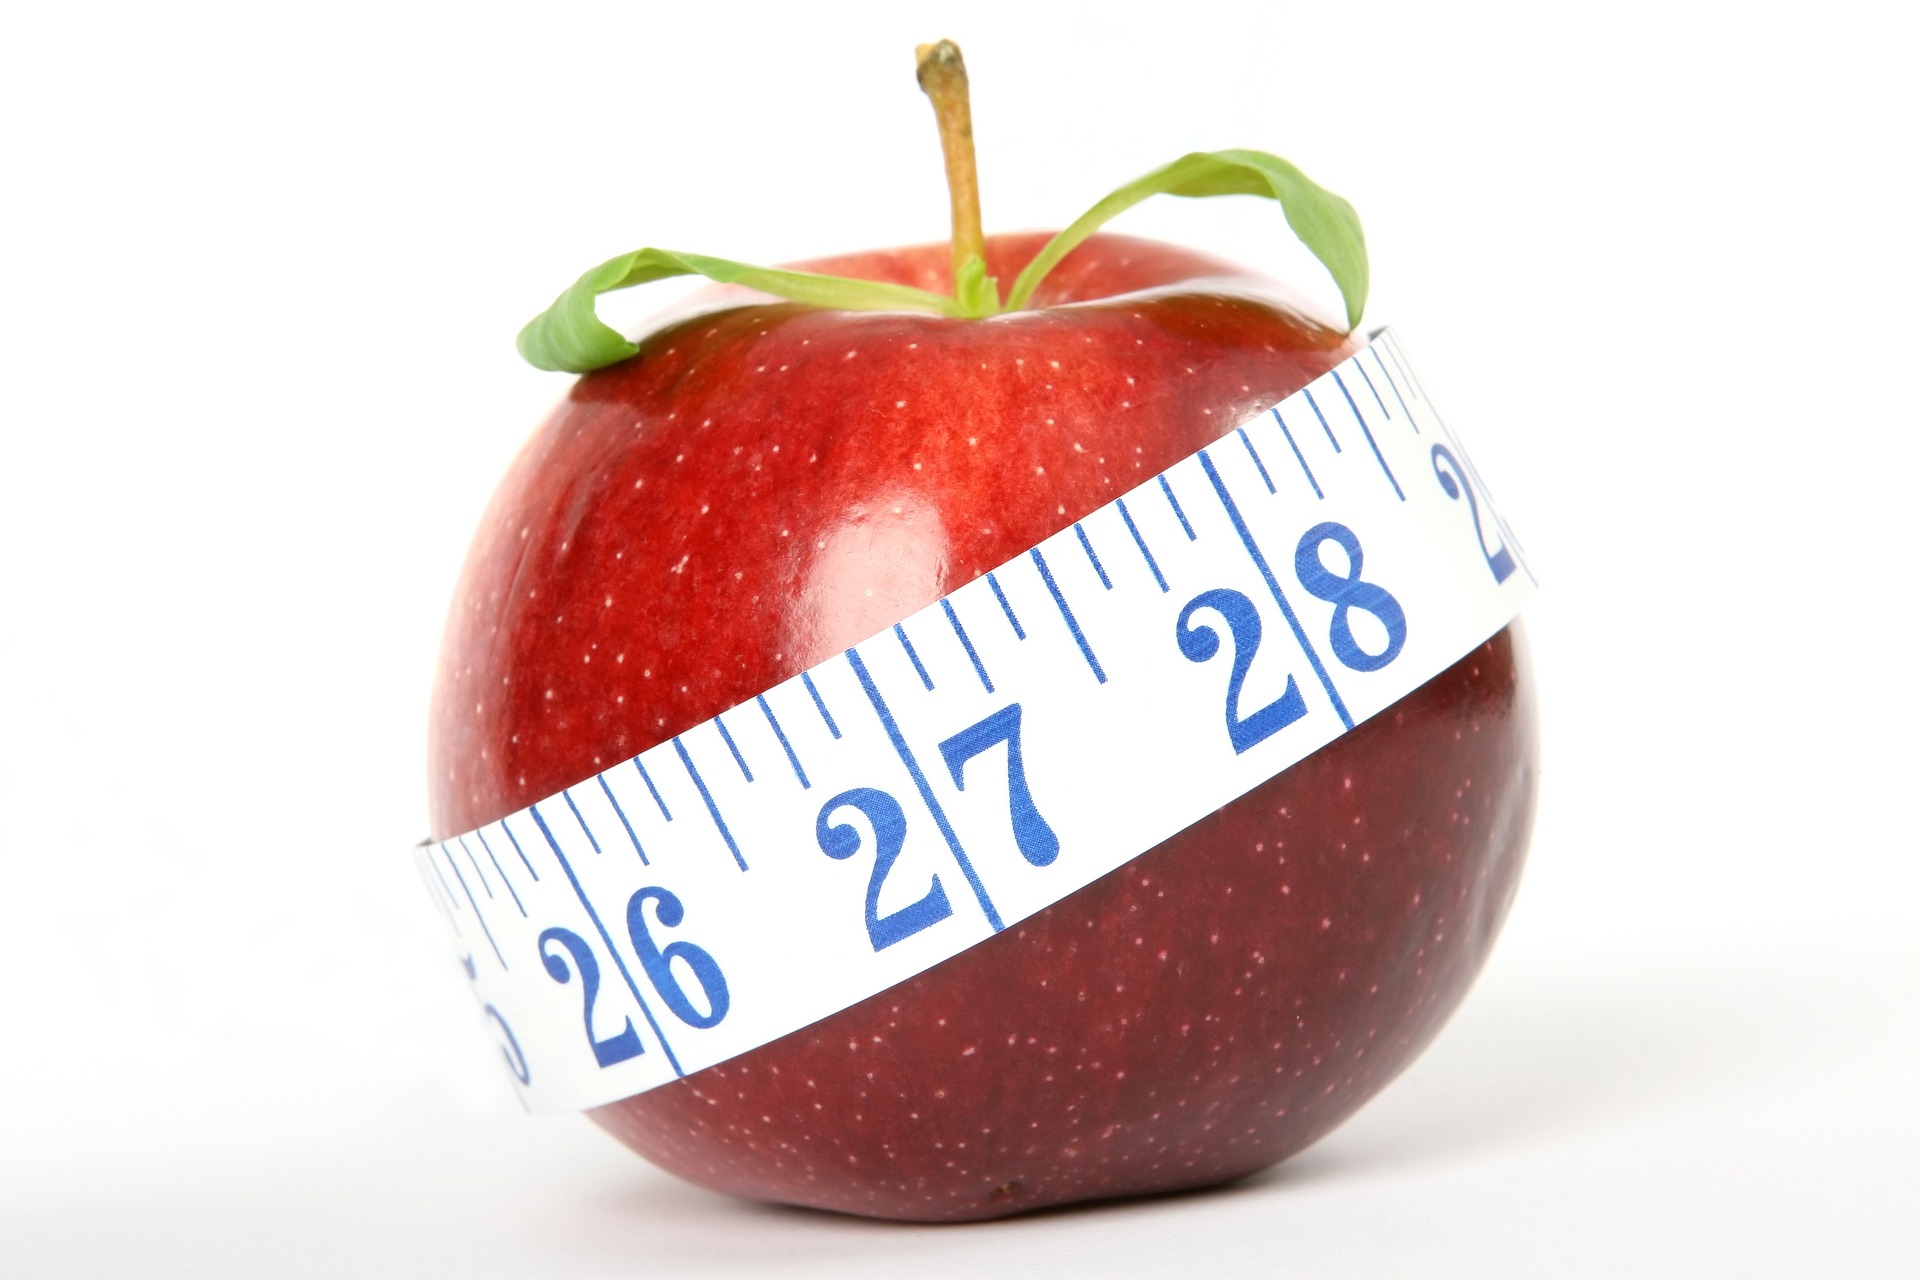 Contar calorías para bajar de peso no tiene sentido, según un experto en nutrición y genética